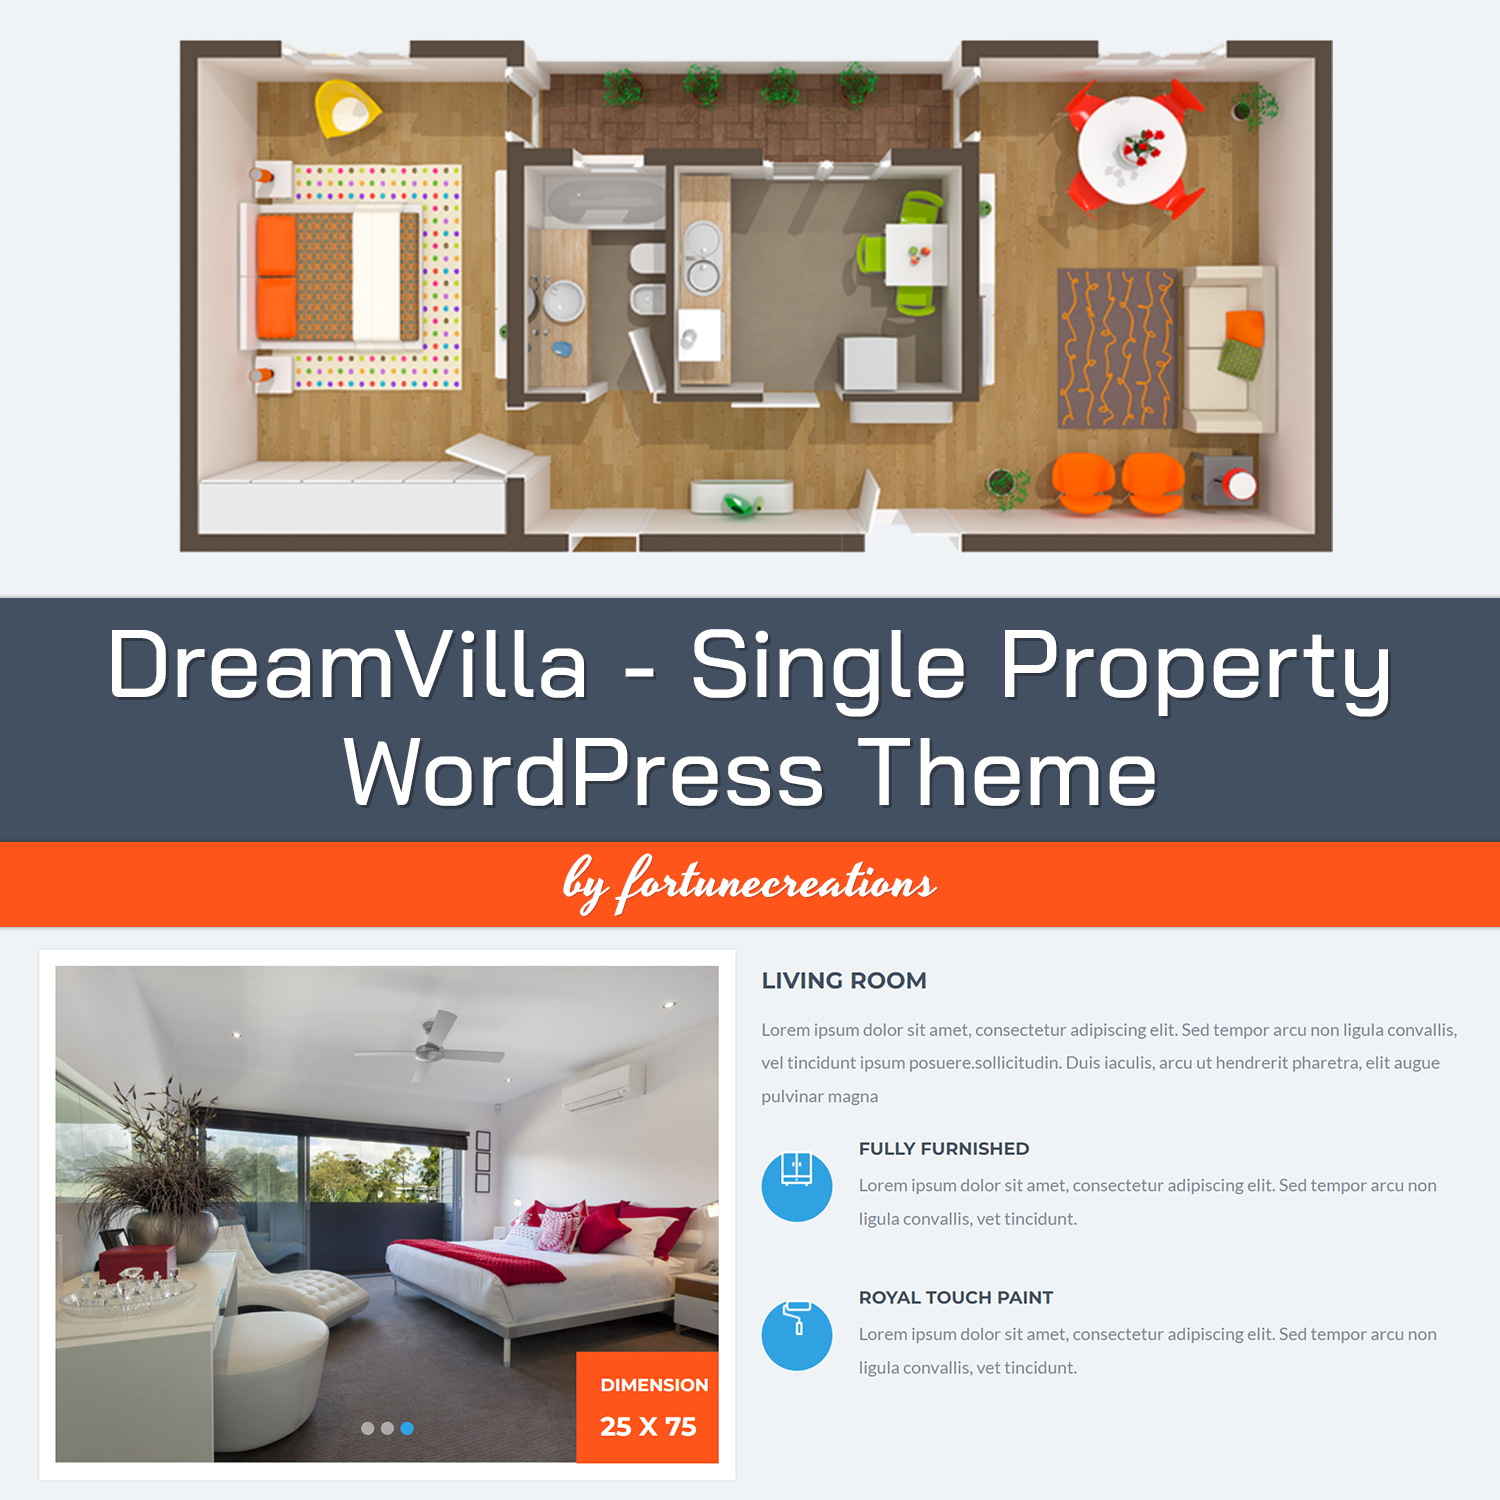 Preview dreamvilla single property wordpress theme.